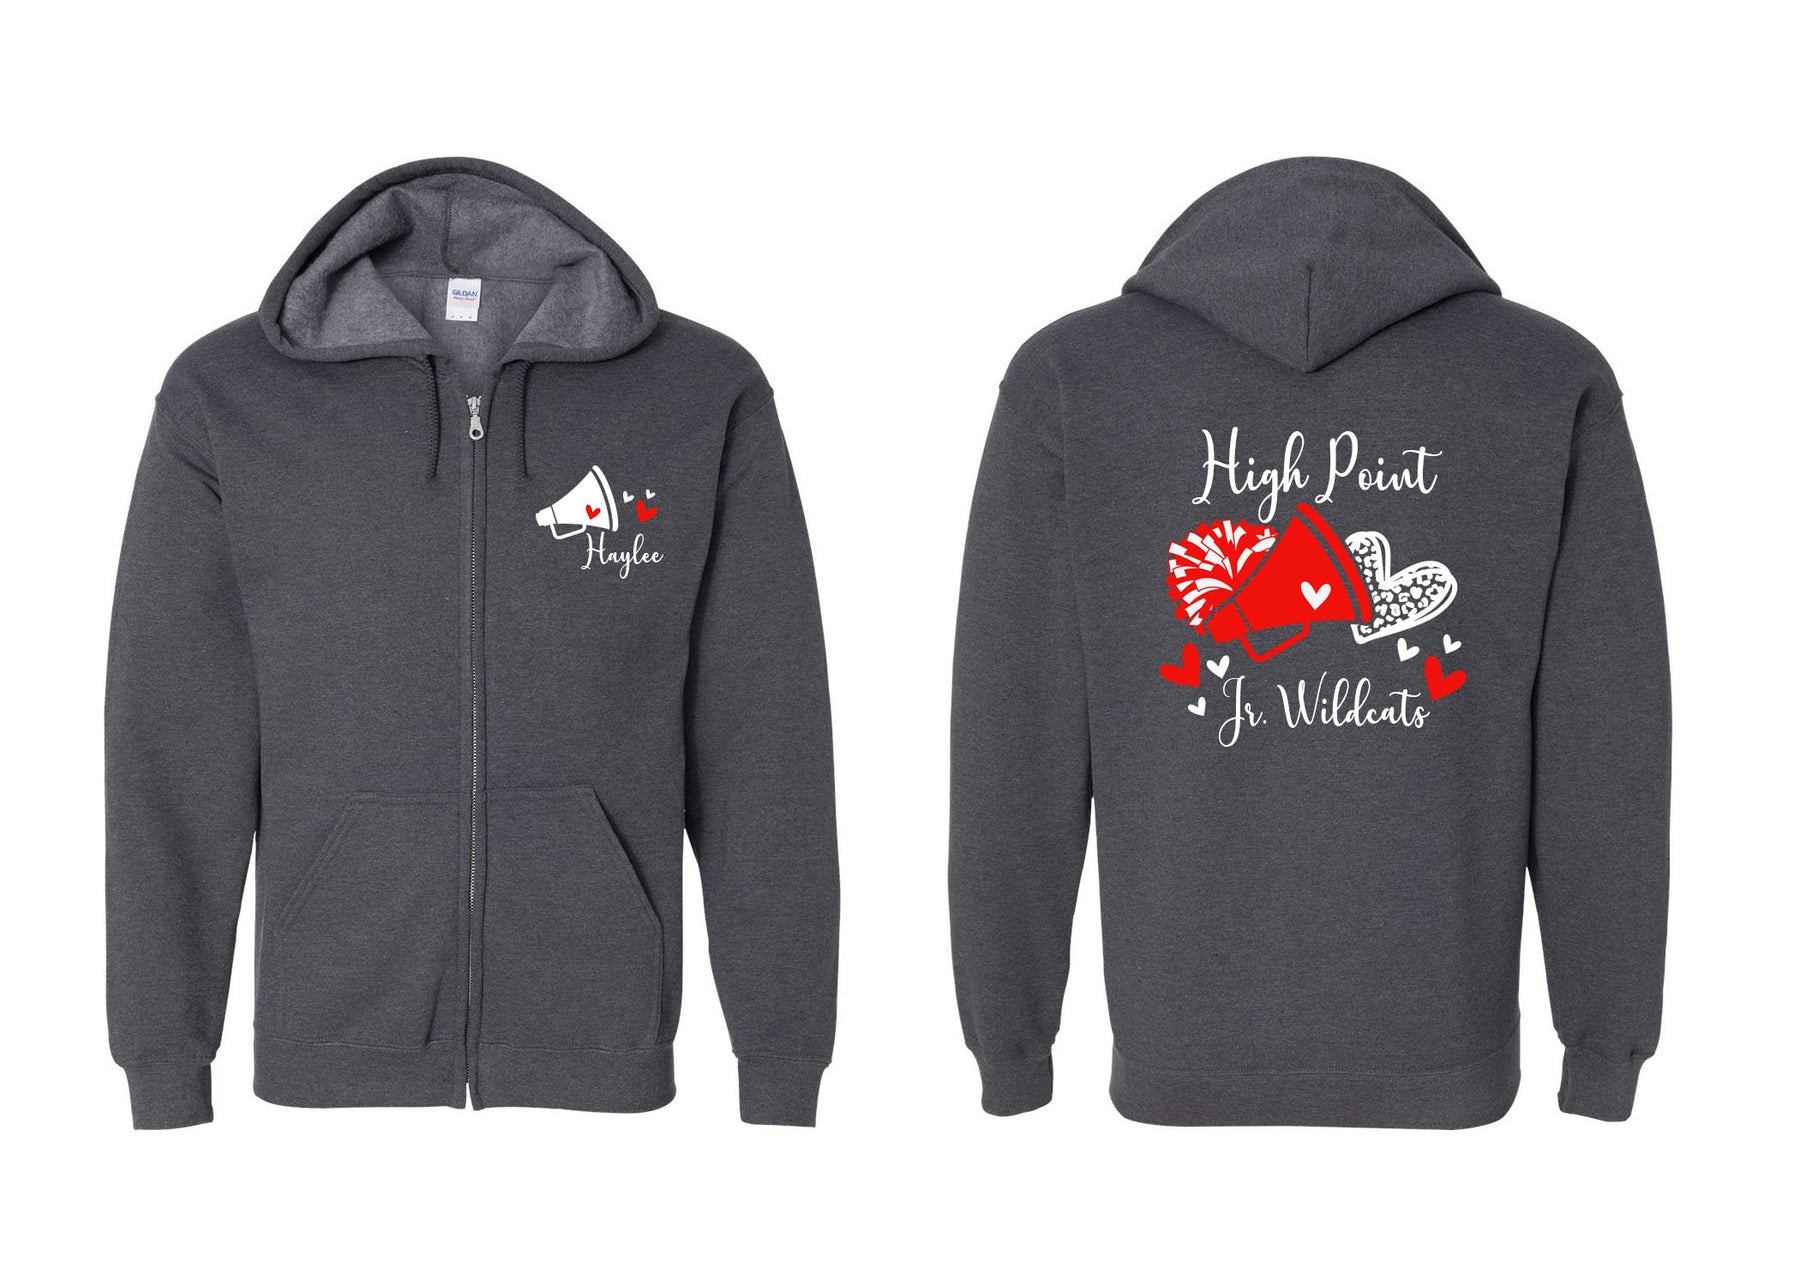 High Point Cheer design 6 Zip up Sweatshirt